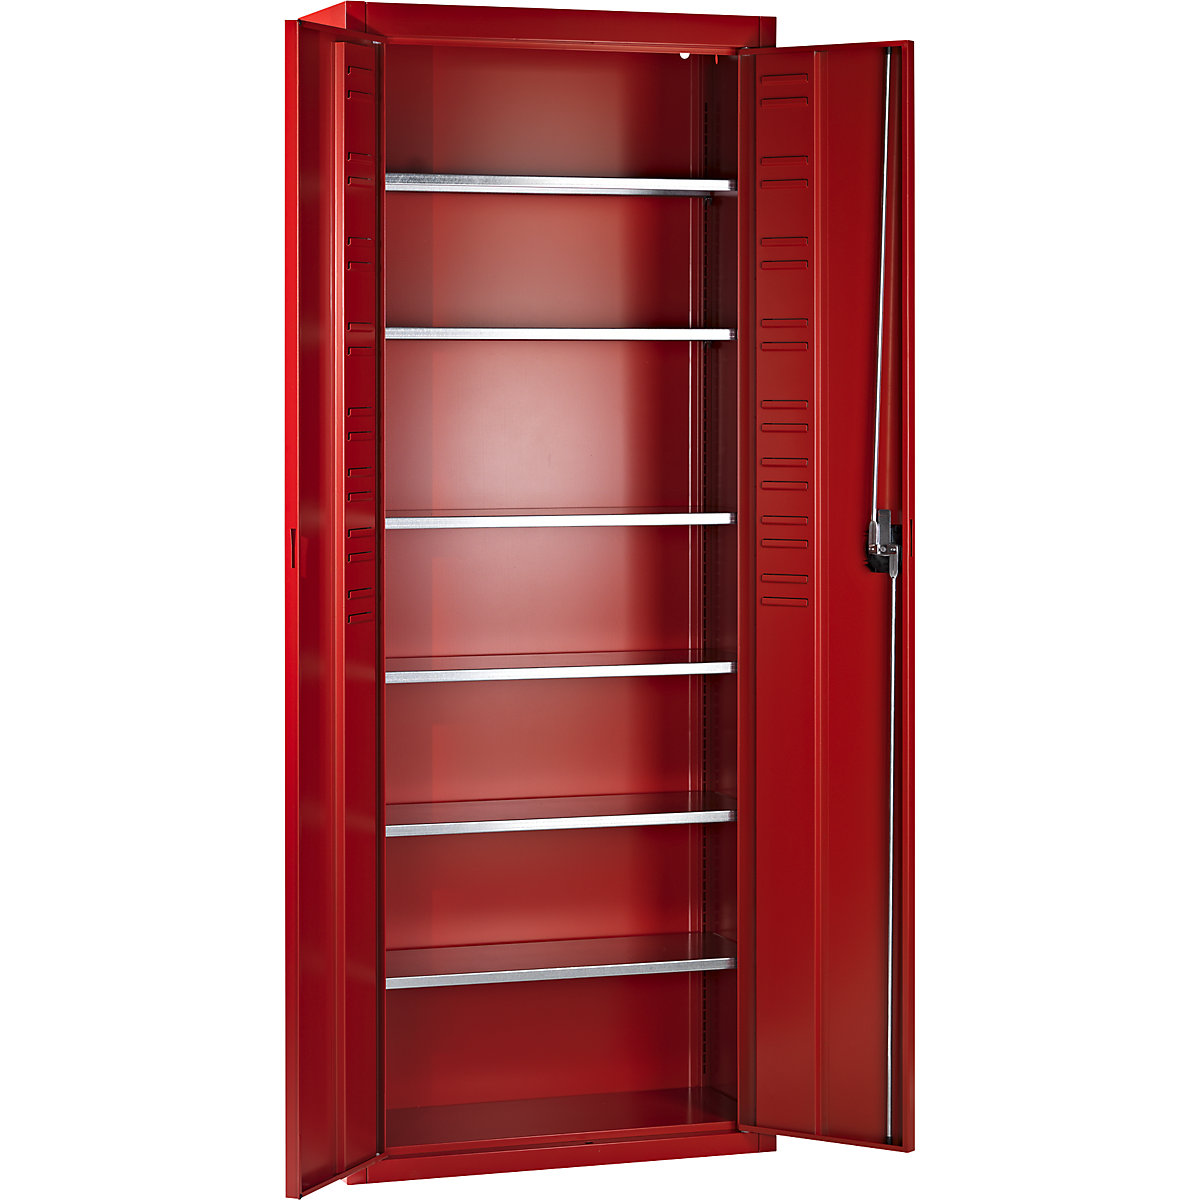 Skladiščna omara, brez odprtih skladiščnih posod – mauser, VxŠxG 1740 x 680 x 280 mm, ena barva, ognjeno rdeče barve, od 3 kosov-5